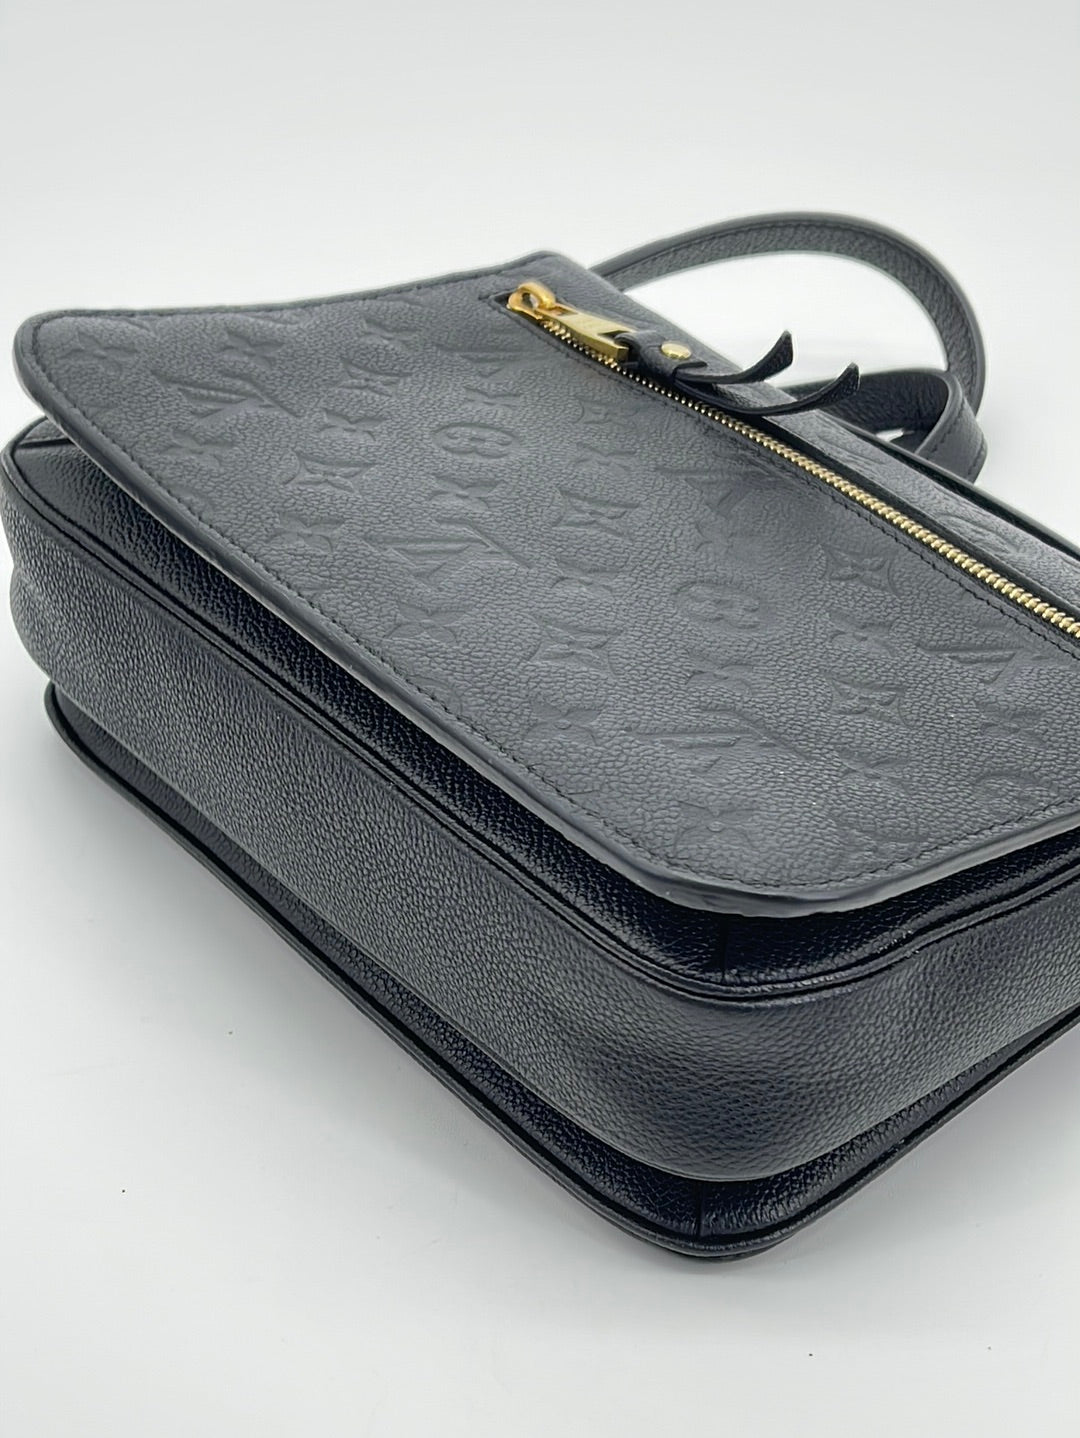 Louis Vuitton Black Monogram Empreinte Crafty Pochette Trio Cloth